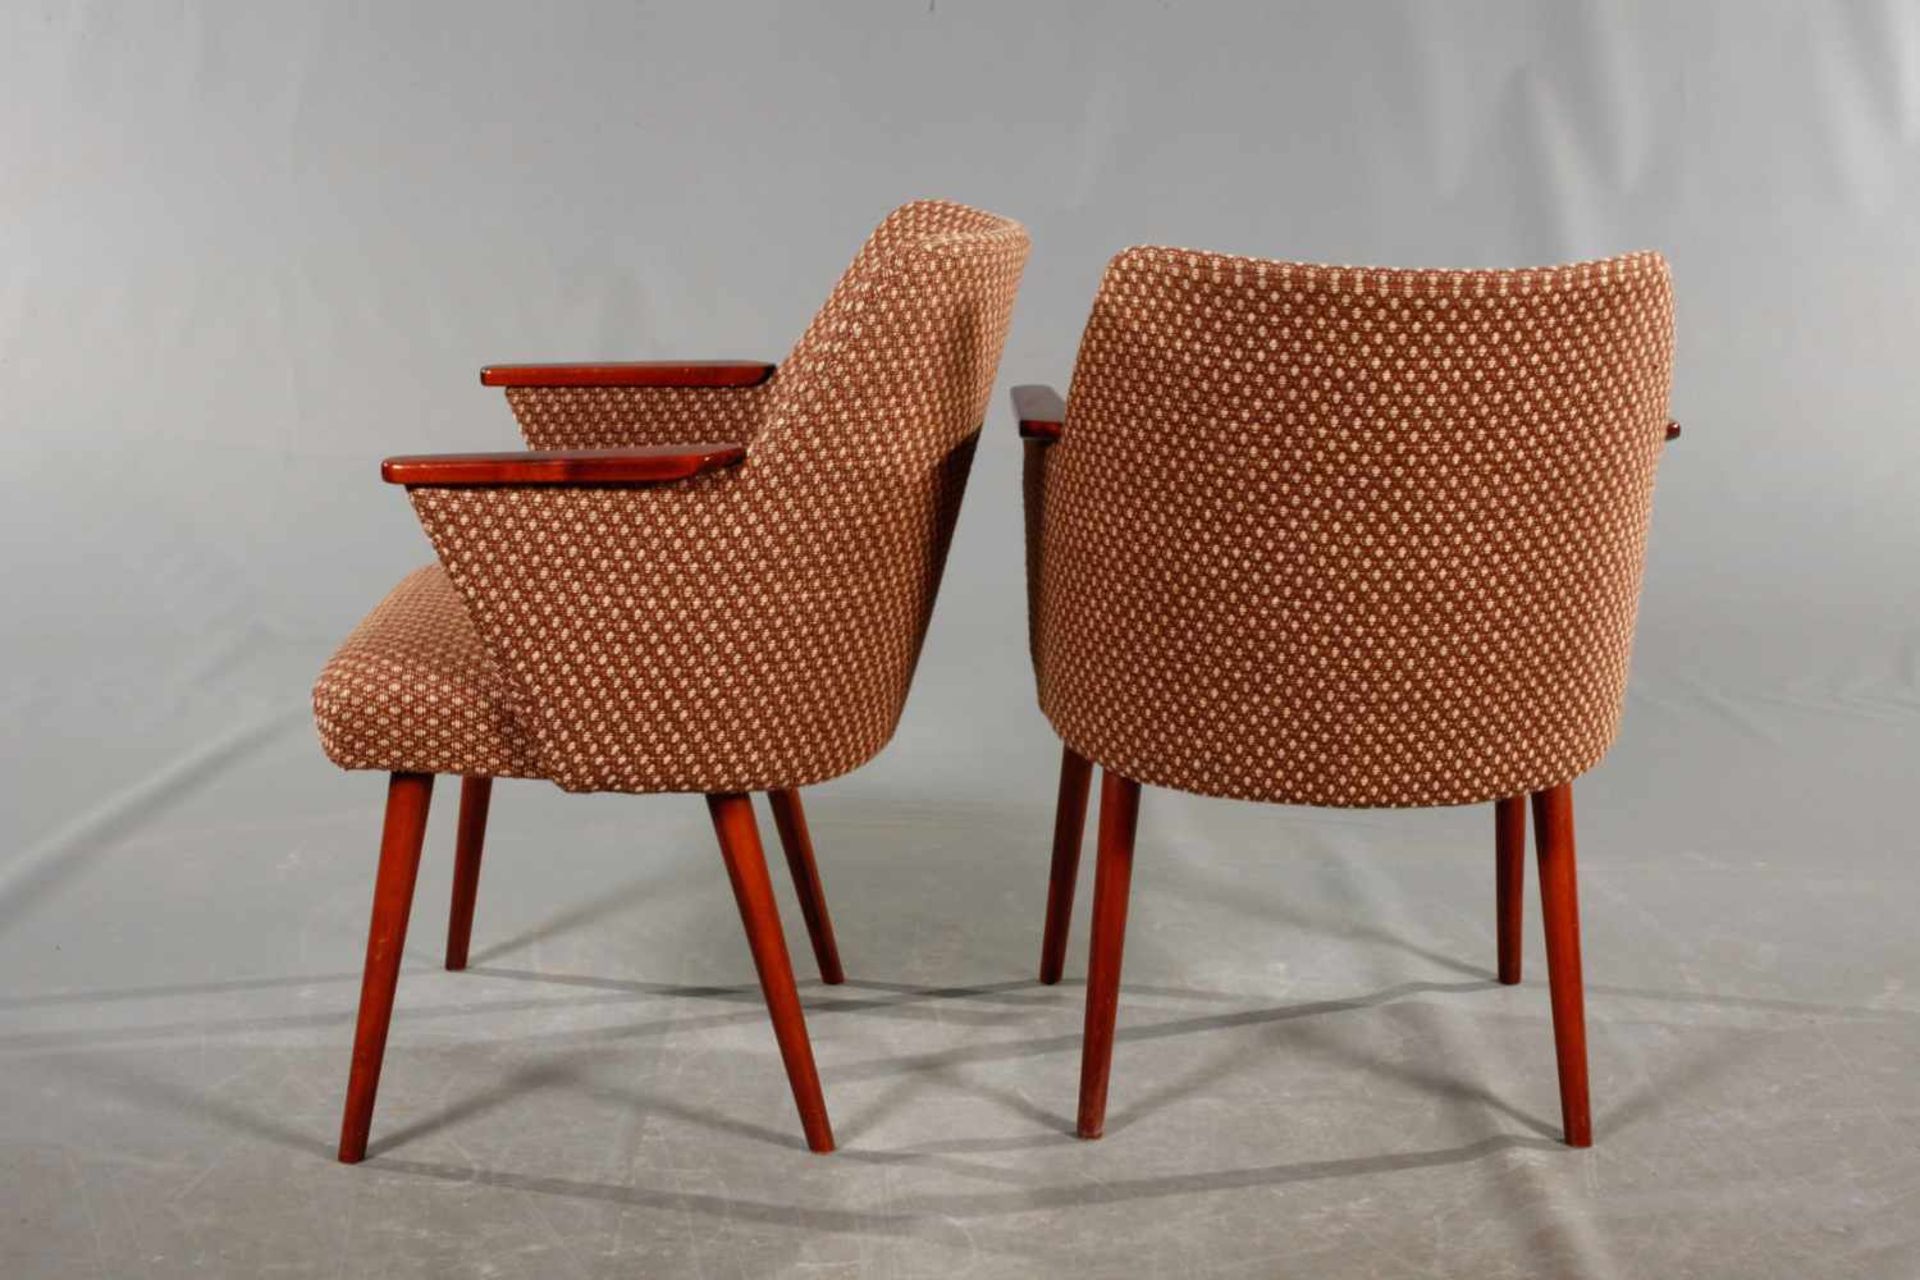 Vier Sessel DDR-Design 1950er Jahre, Lehne und Beine aus Buche, rotbraun gebeizt, originaler - Bild 4 aus 5